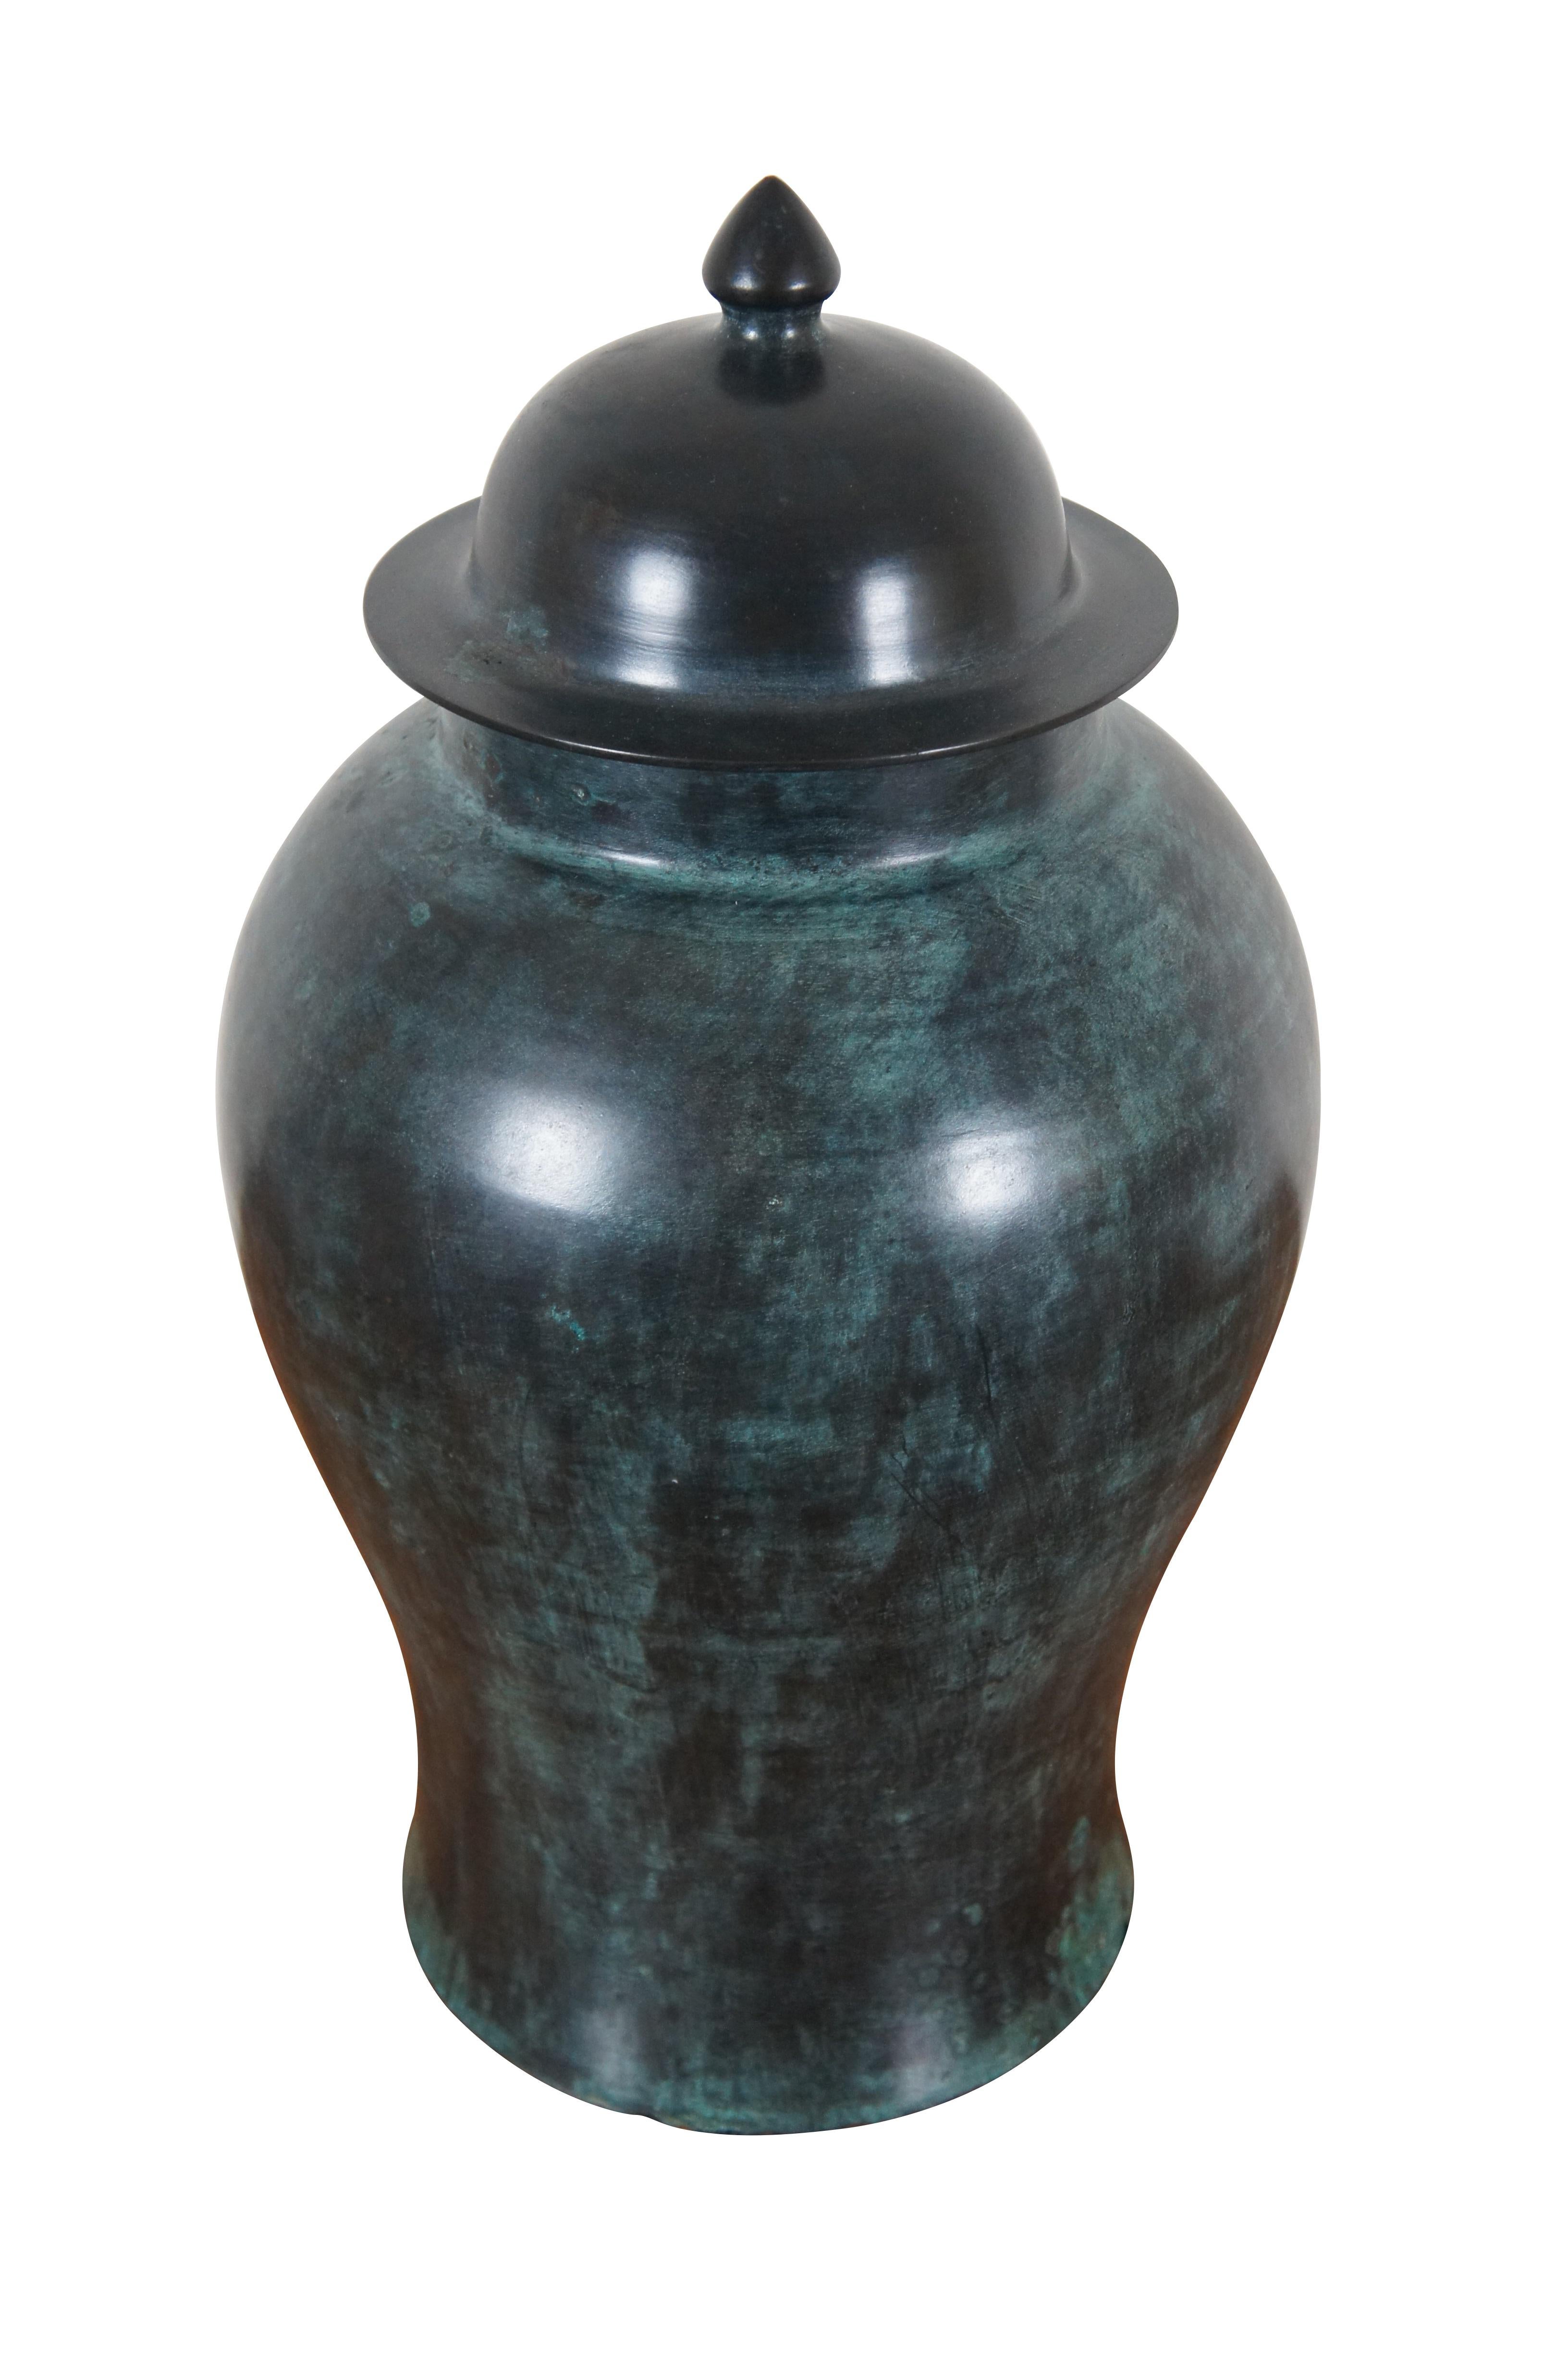 Vintage schwer Bronze Deckel Ingwer Glas / Urne / Vase, hergestellt von Maitland Smith.  Entworfen und handgefertigt in Thailand. 458 XP.

Abmessungen:
11